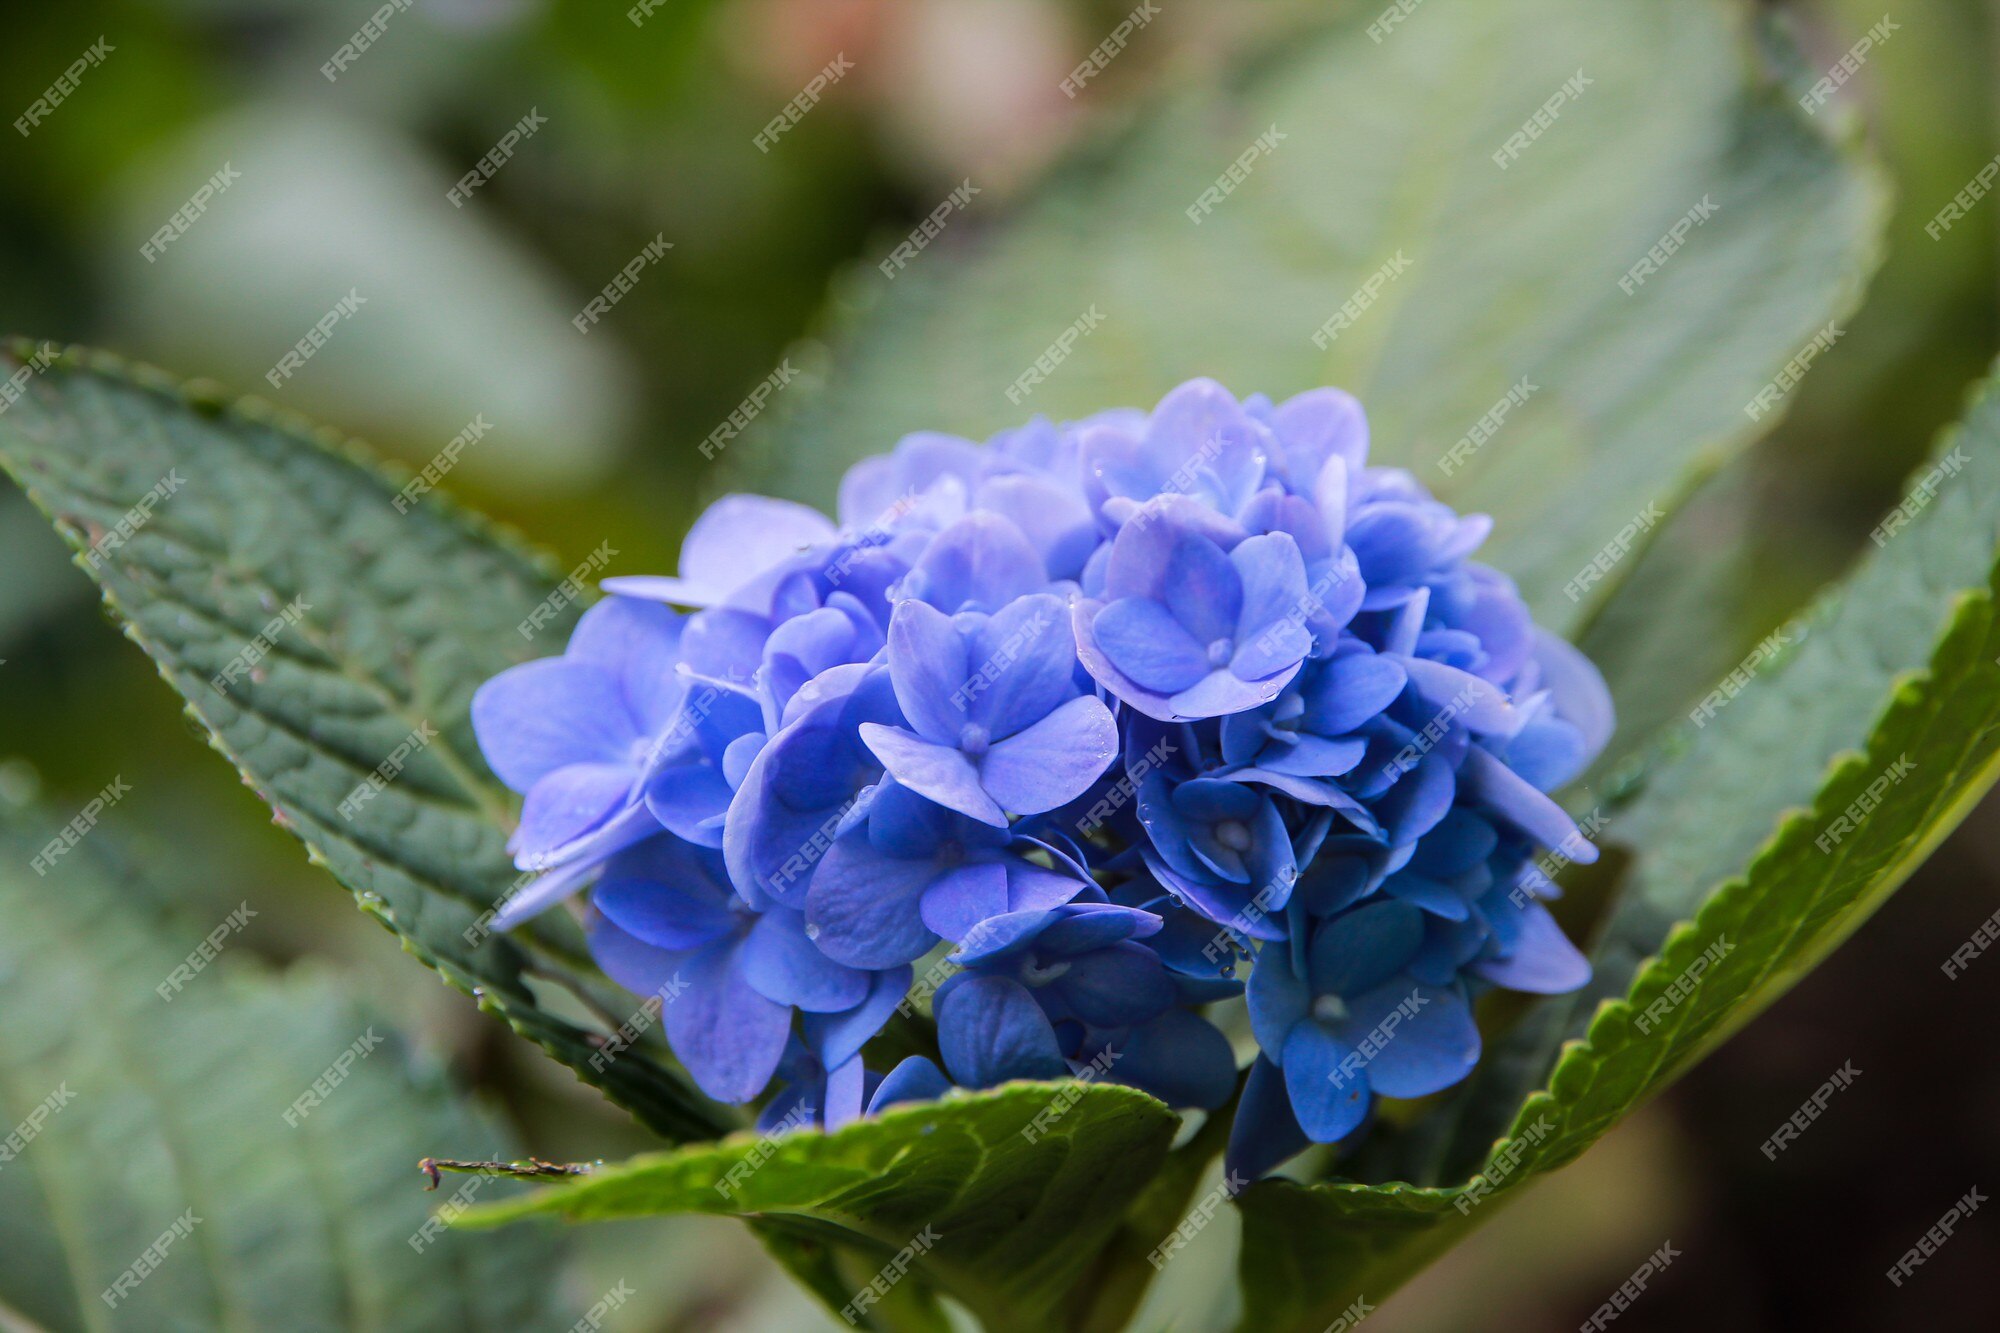 Azul, lila, violeta, púrpura flor de hortensia (hydrangea macrophylla) que  florece en primavera y verano en un jardín. hydrangea macrophylla | Foto  Premium